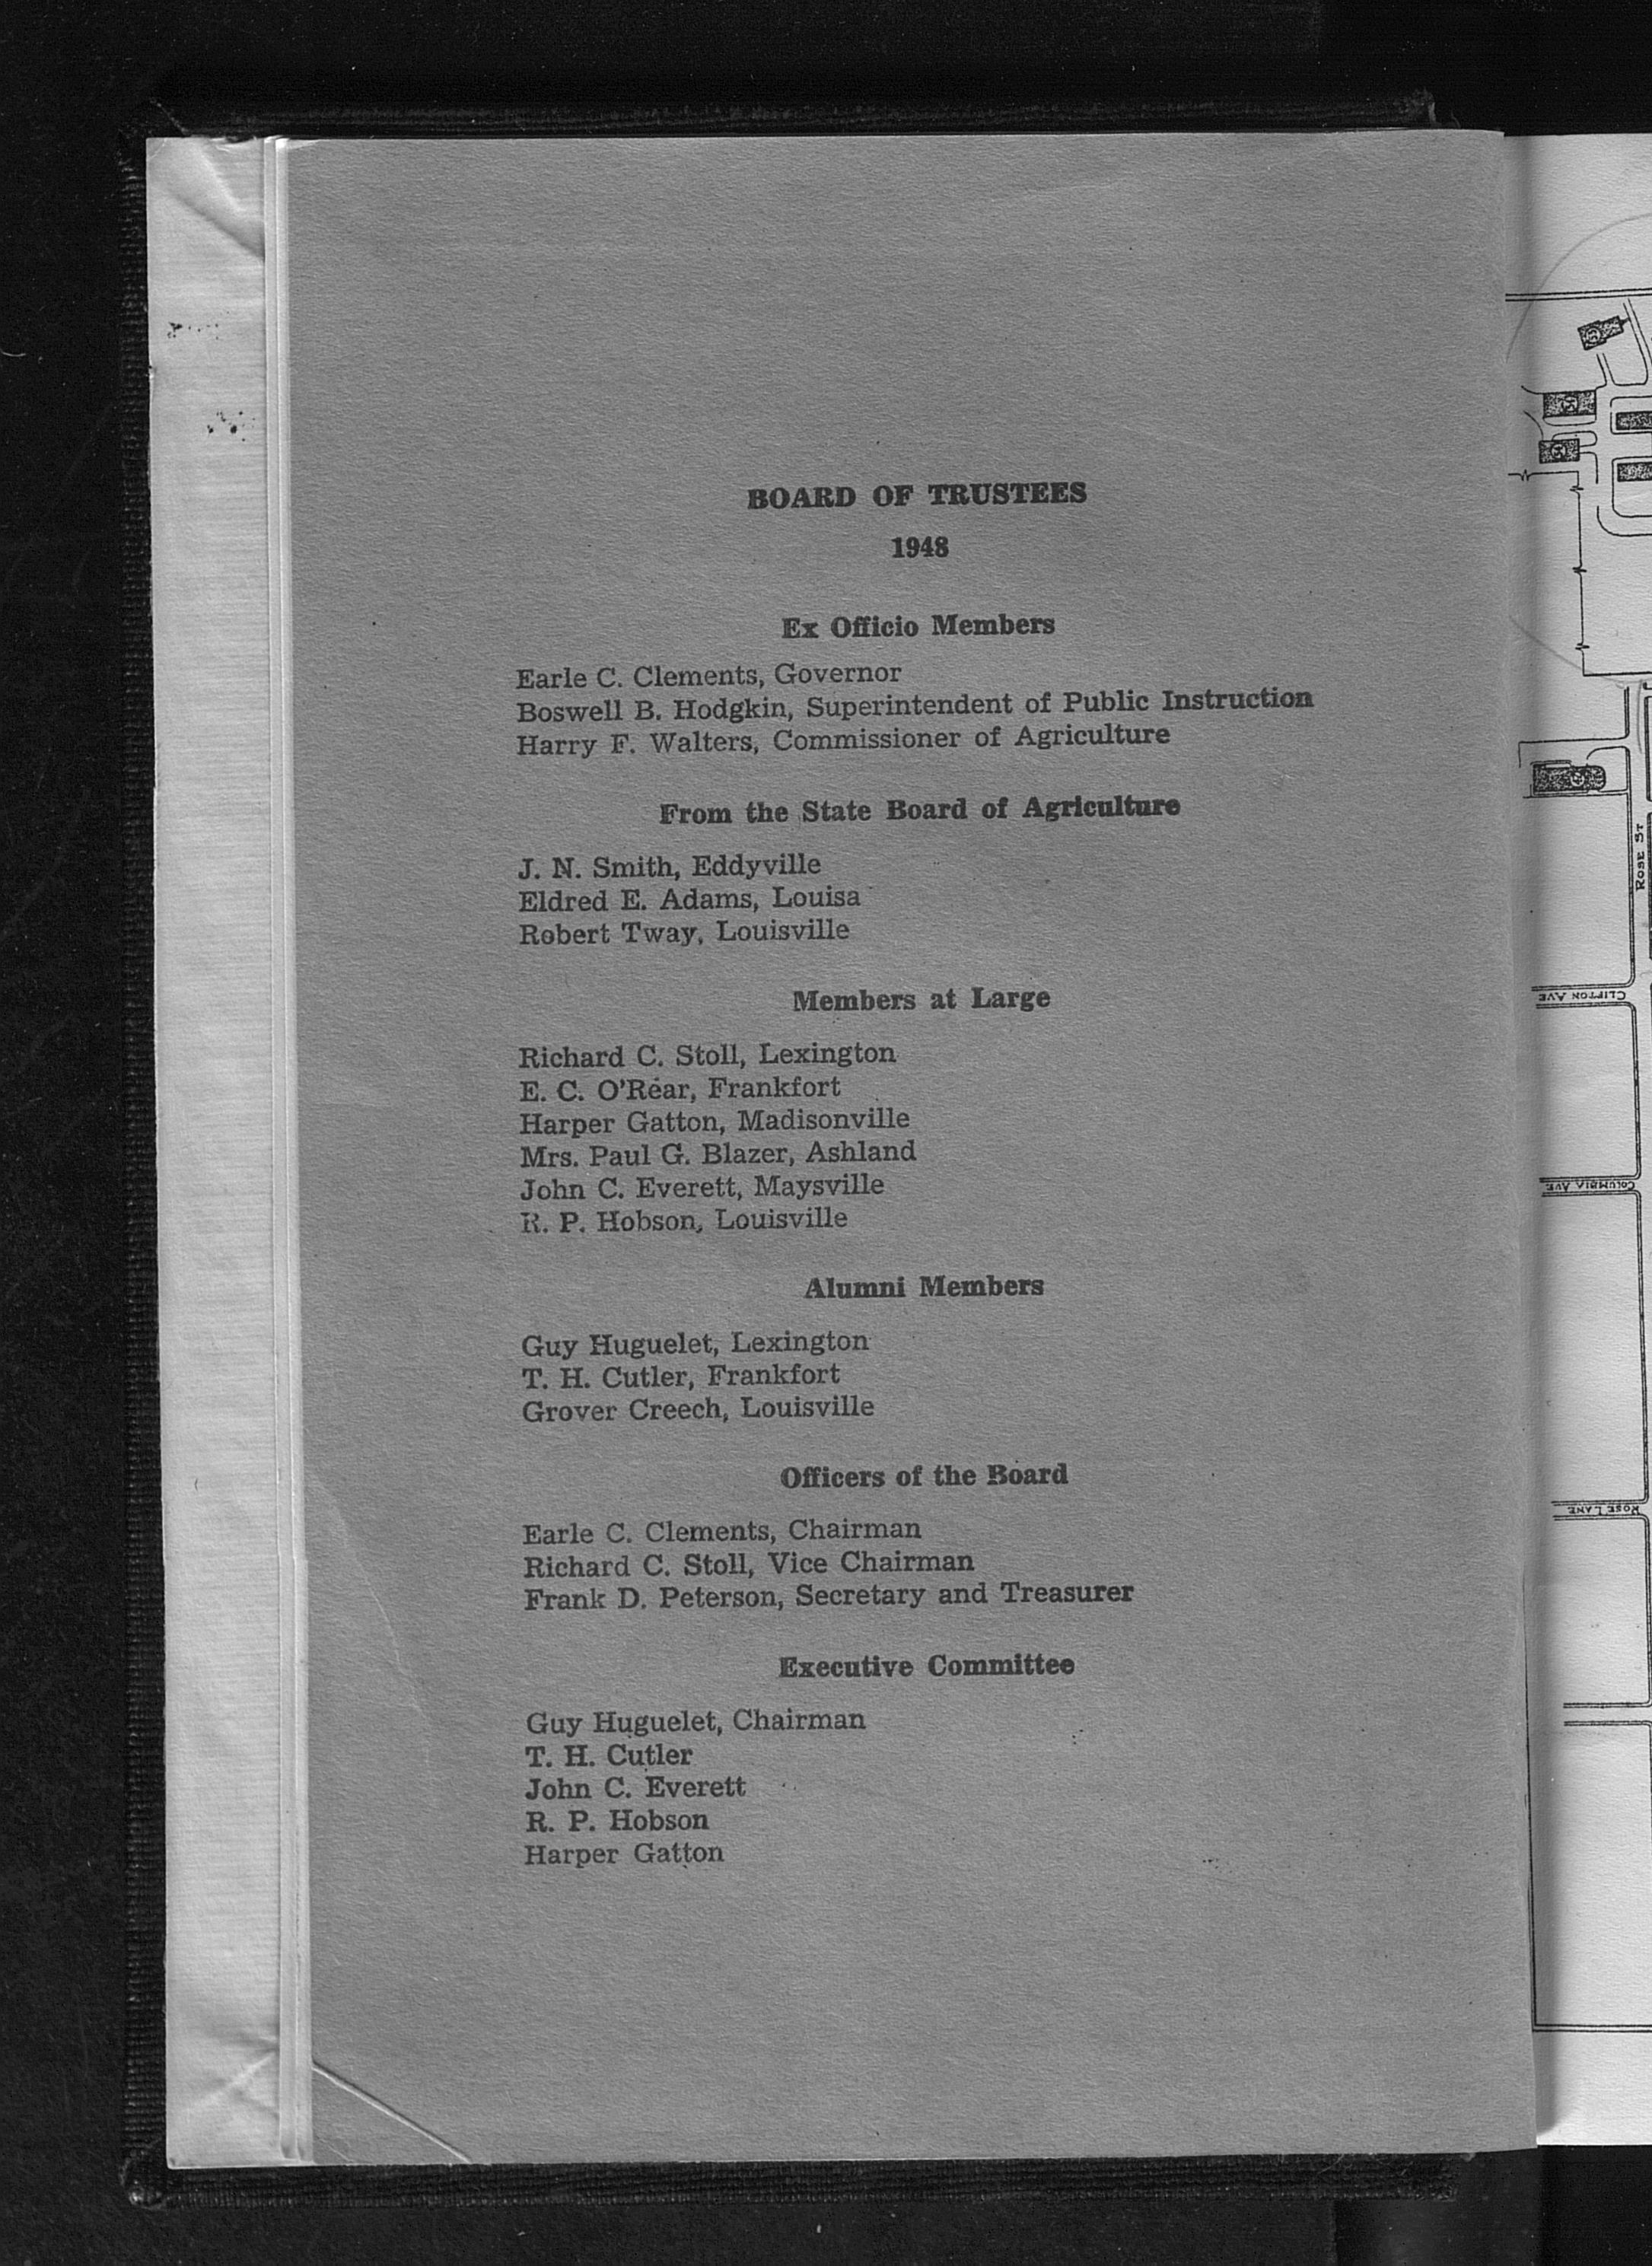 Bulletin of the University of Kentucky, Volume 22 (1947-1948)